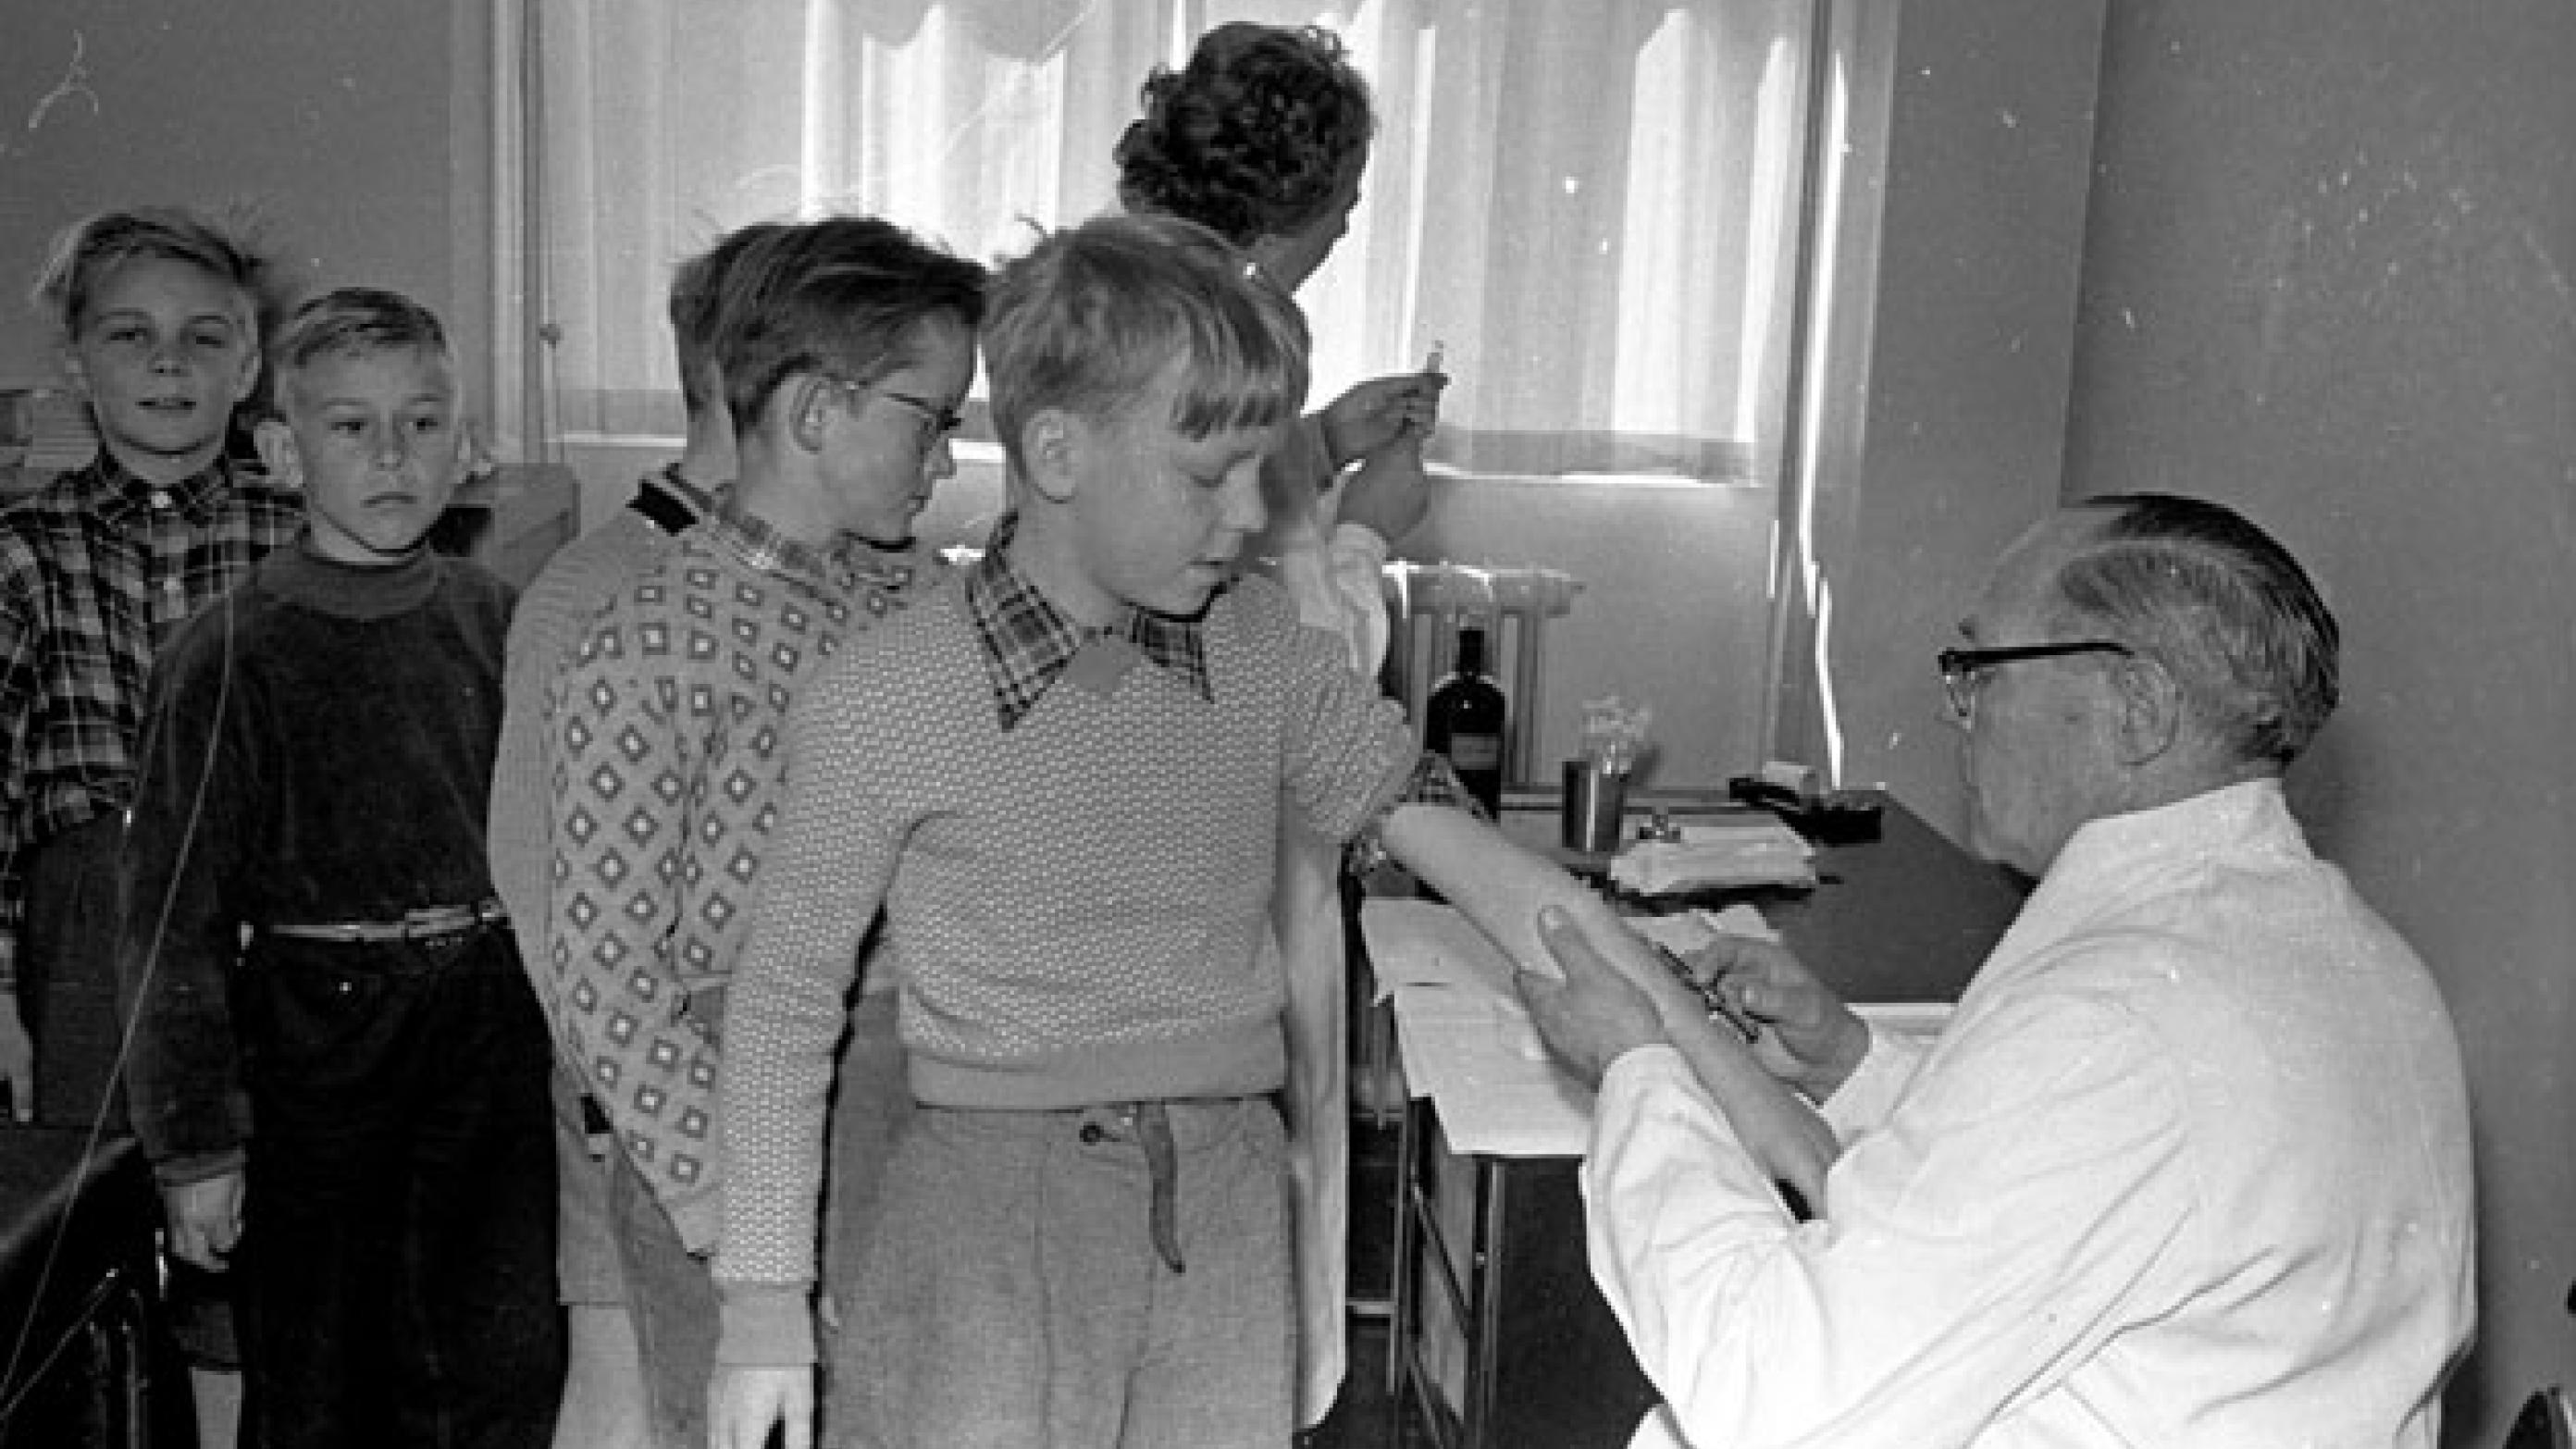 Efter polioepidemien i 1953 var danske forældre panisk angste for, at deres børn skulle blive ofre for en ny epidemi. Her er det amtslæge Hj. Heerup, som i april 1955 stikker nålen i armen på en betænkelig elev på Munkebjergskolen i Odense, mens kammeraterne bagved nervøst venter på deres tur. Foto: Fyens Stiftstidendes pressefotosamling, Odense Stadsarkiv